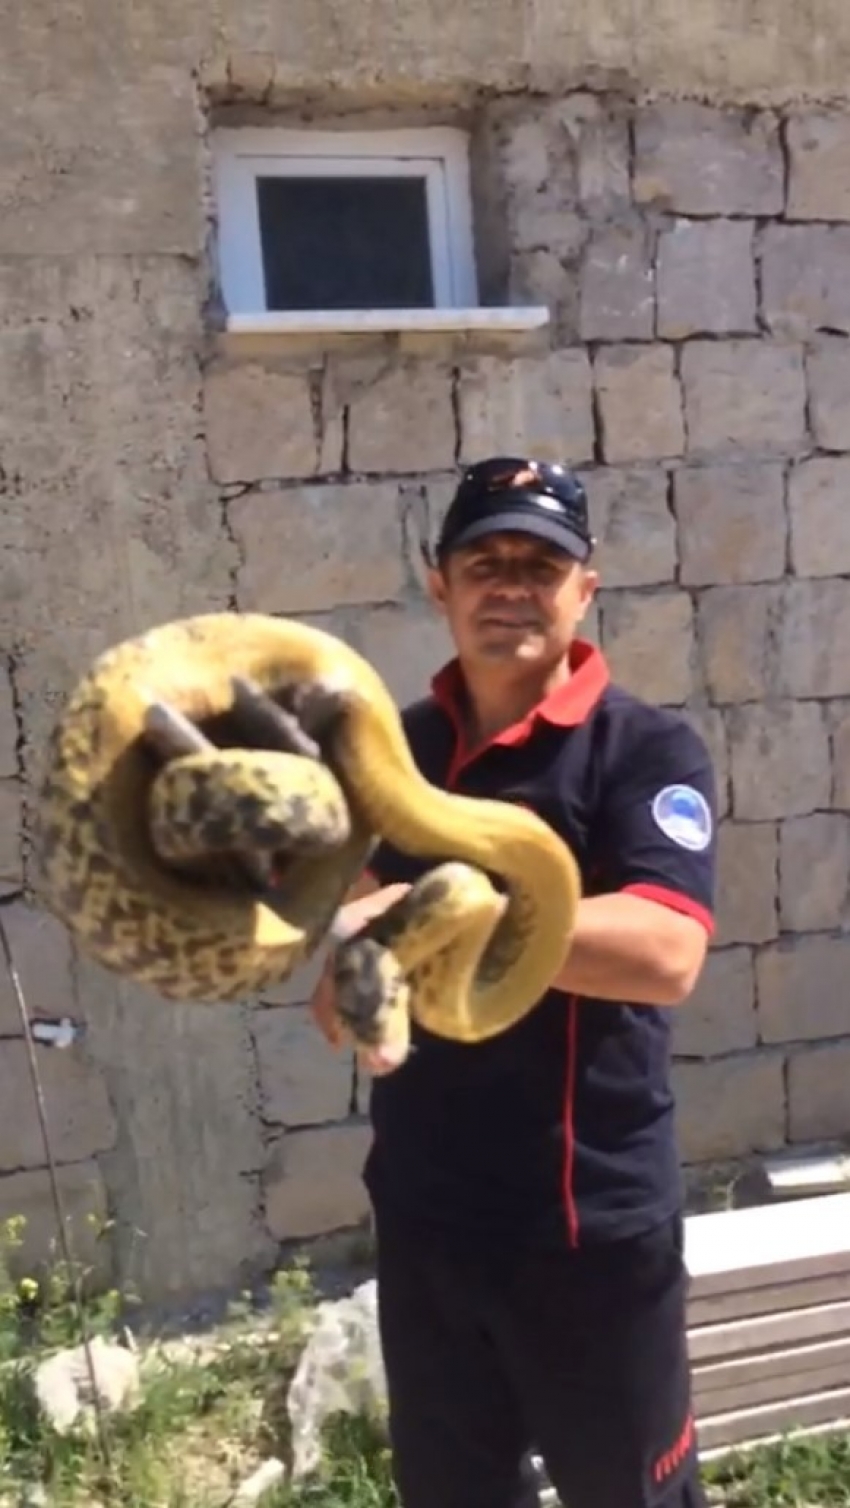 Duvardaki 3 metrelik dev yılan böyle yakalandı